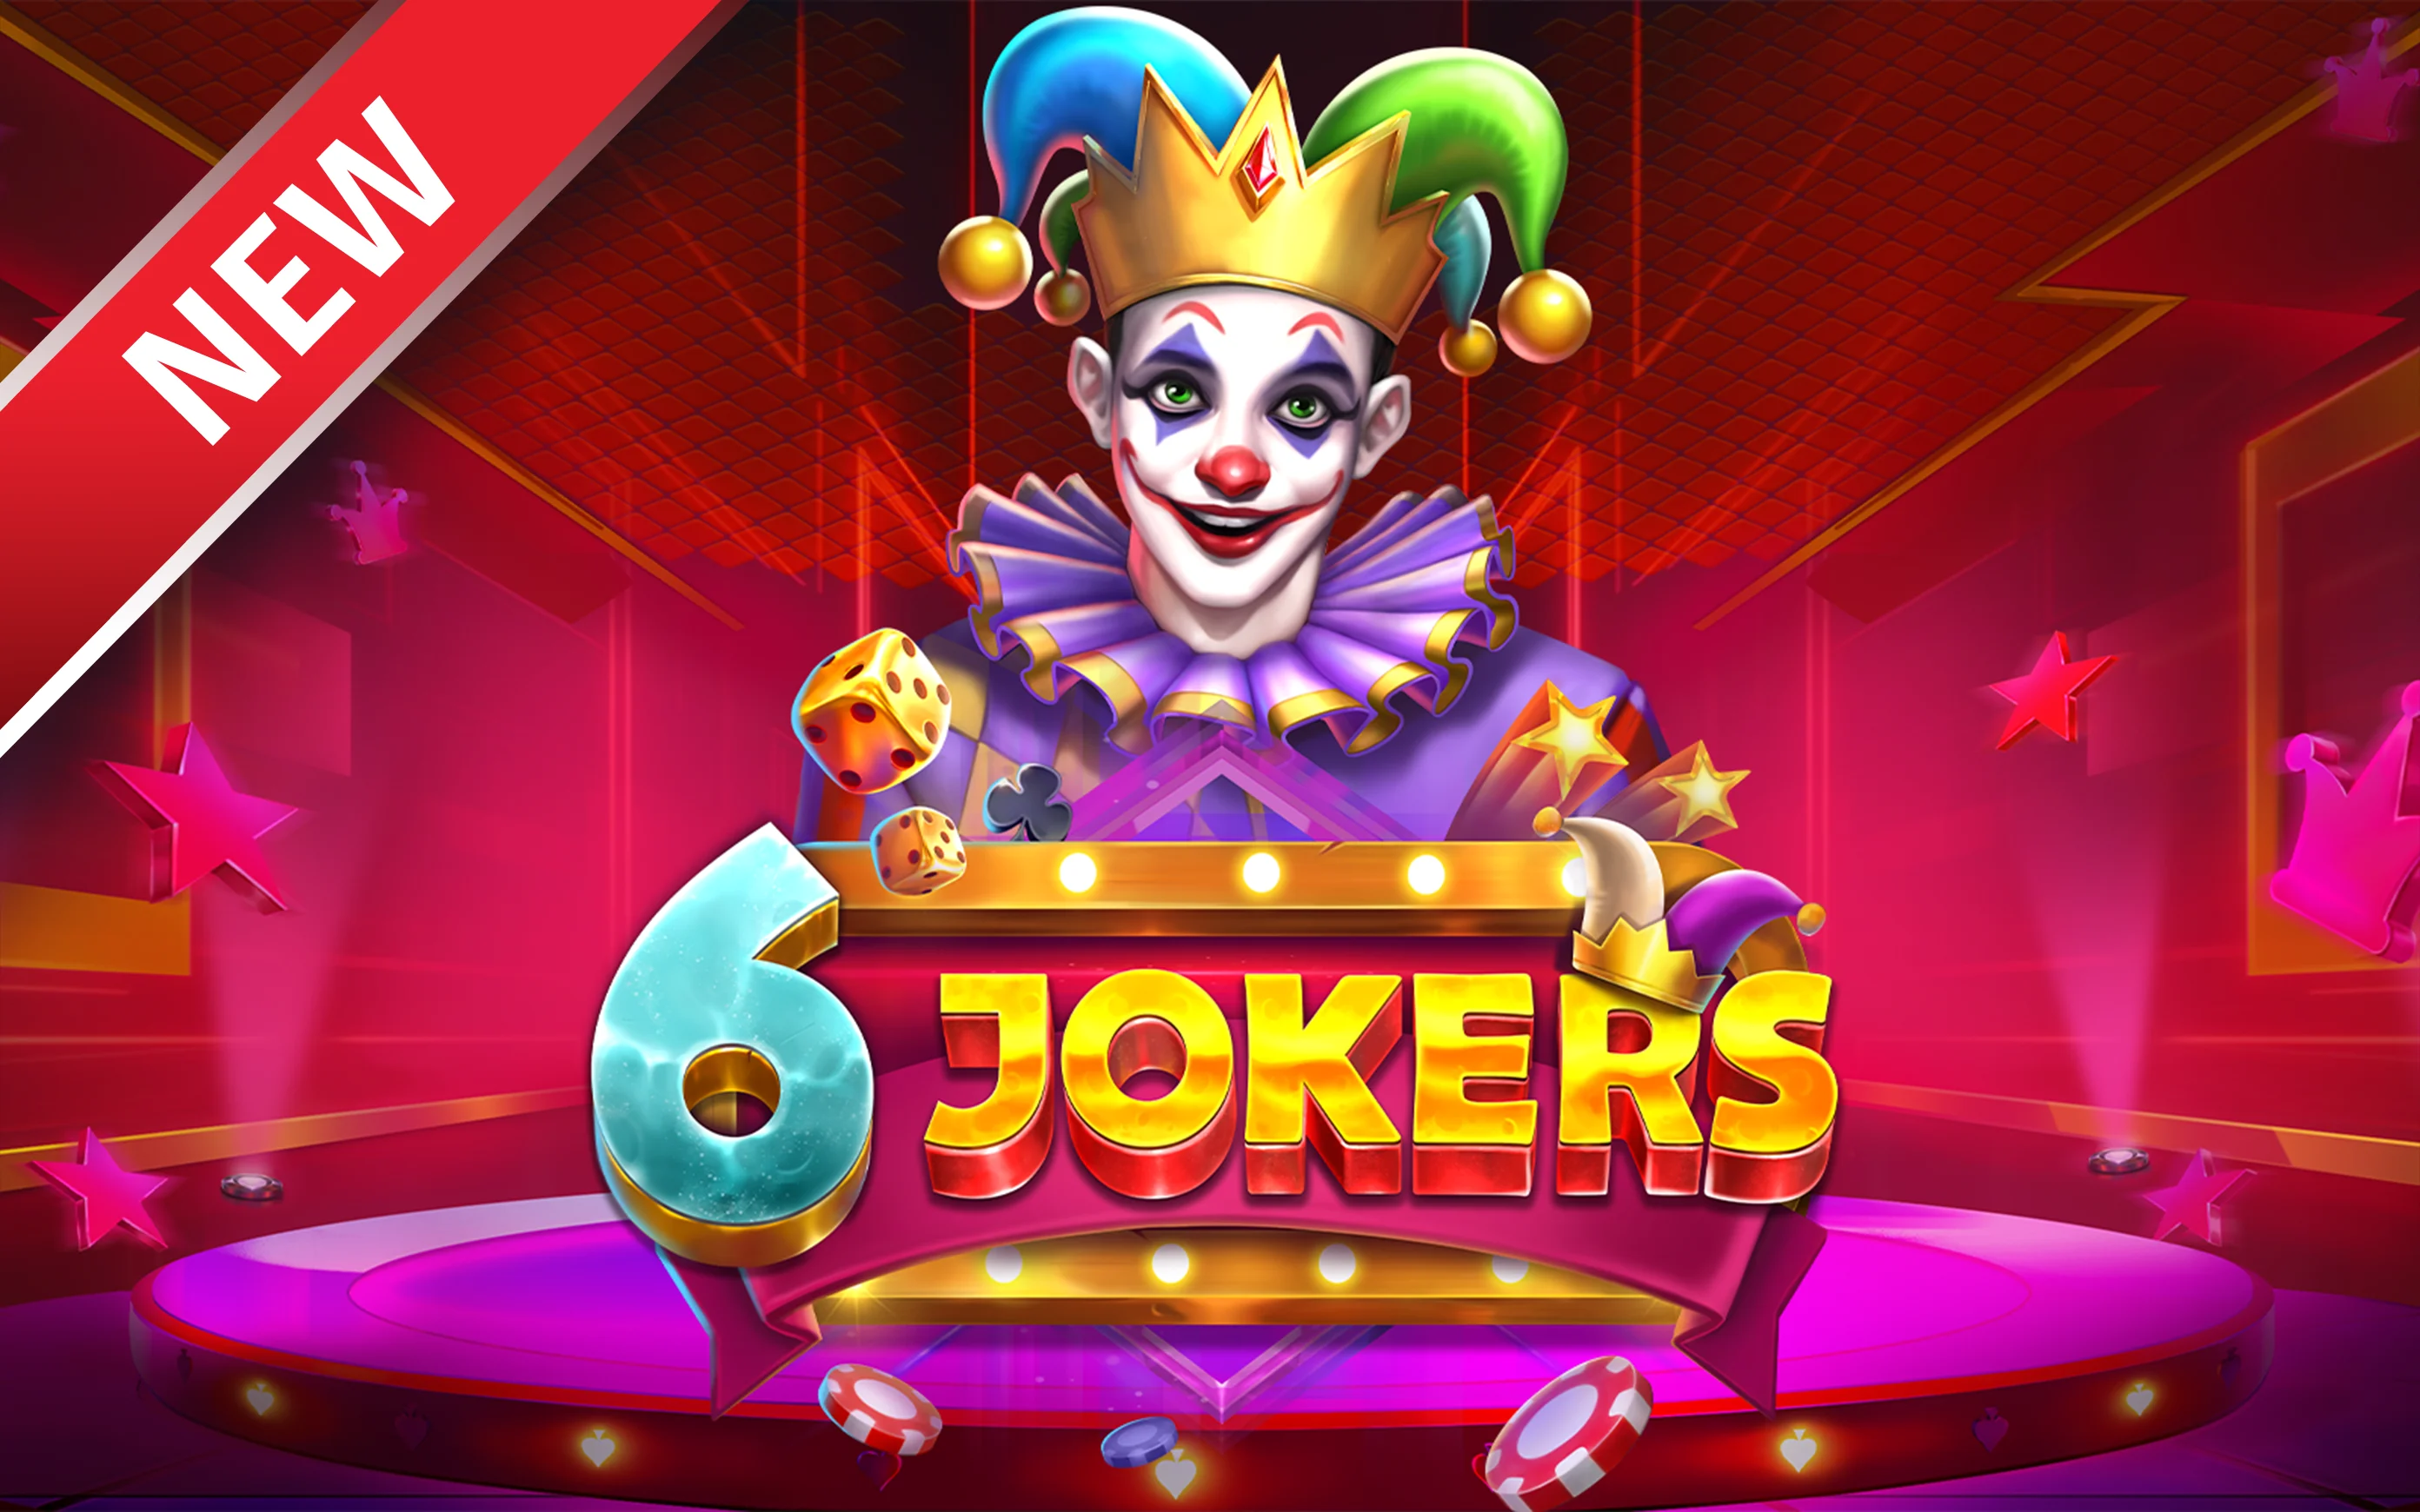 Zagraj w 6 Jokers w kasynie online Starcasino.be